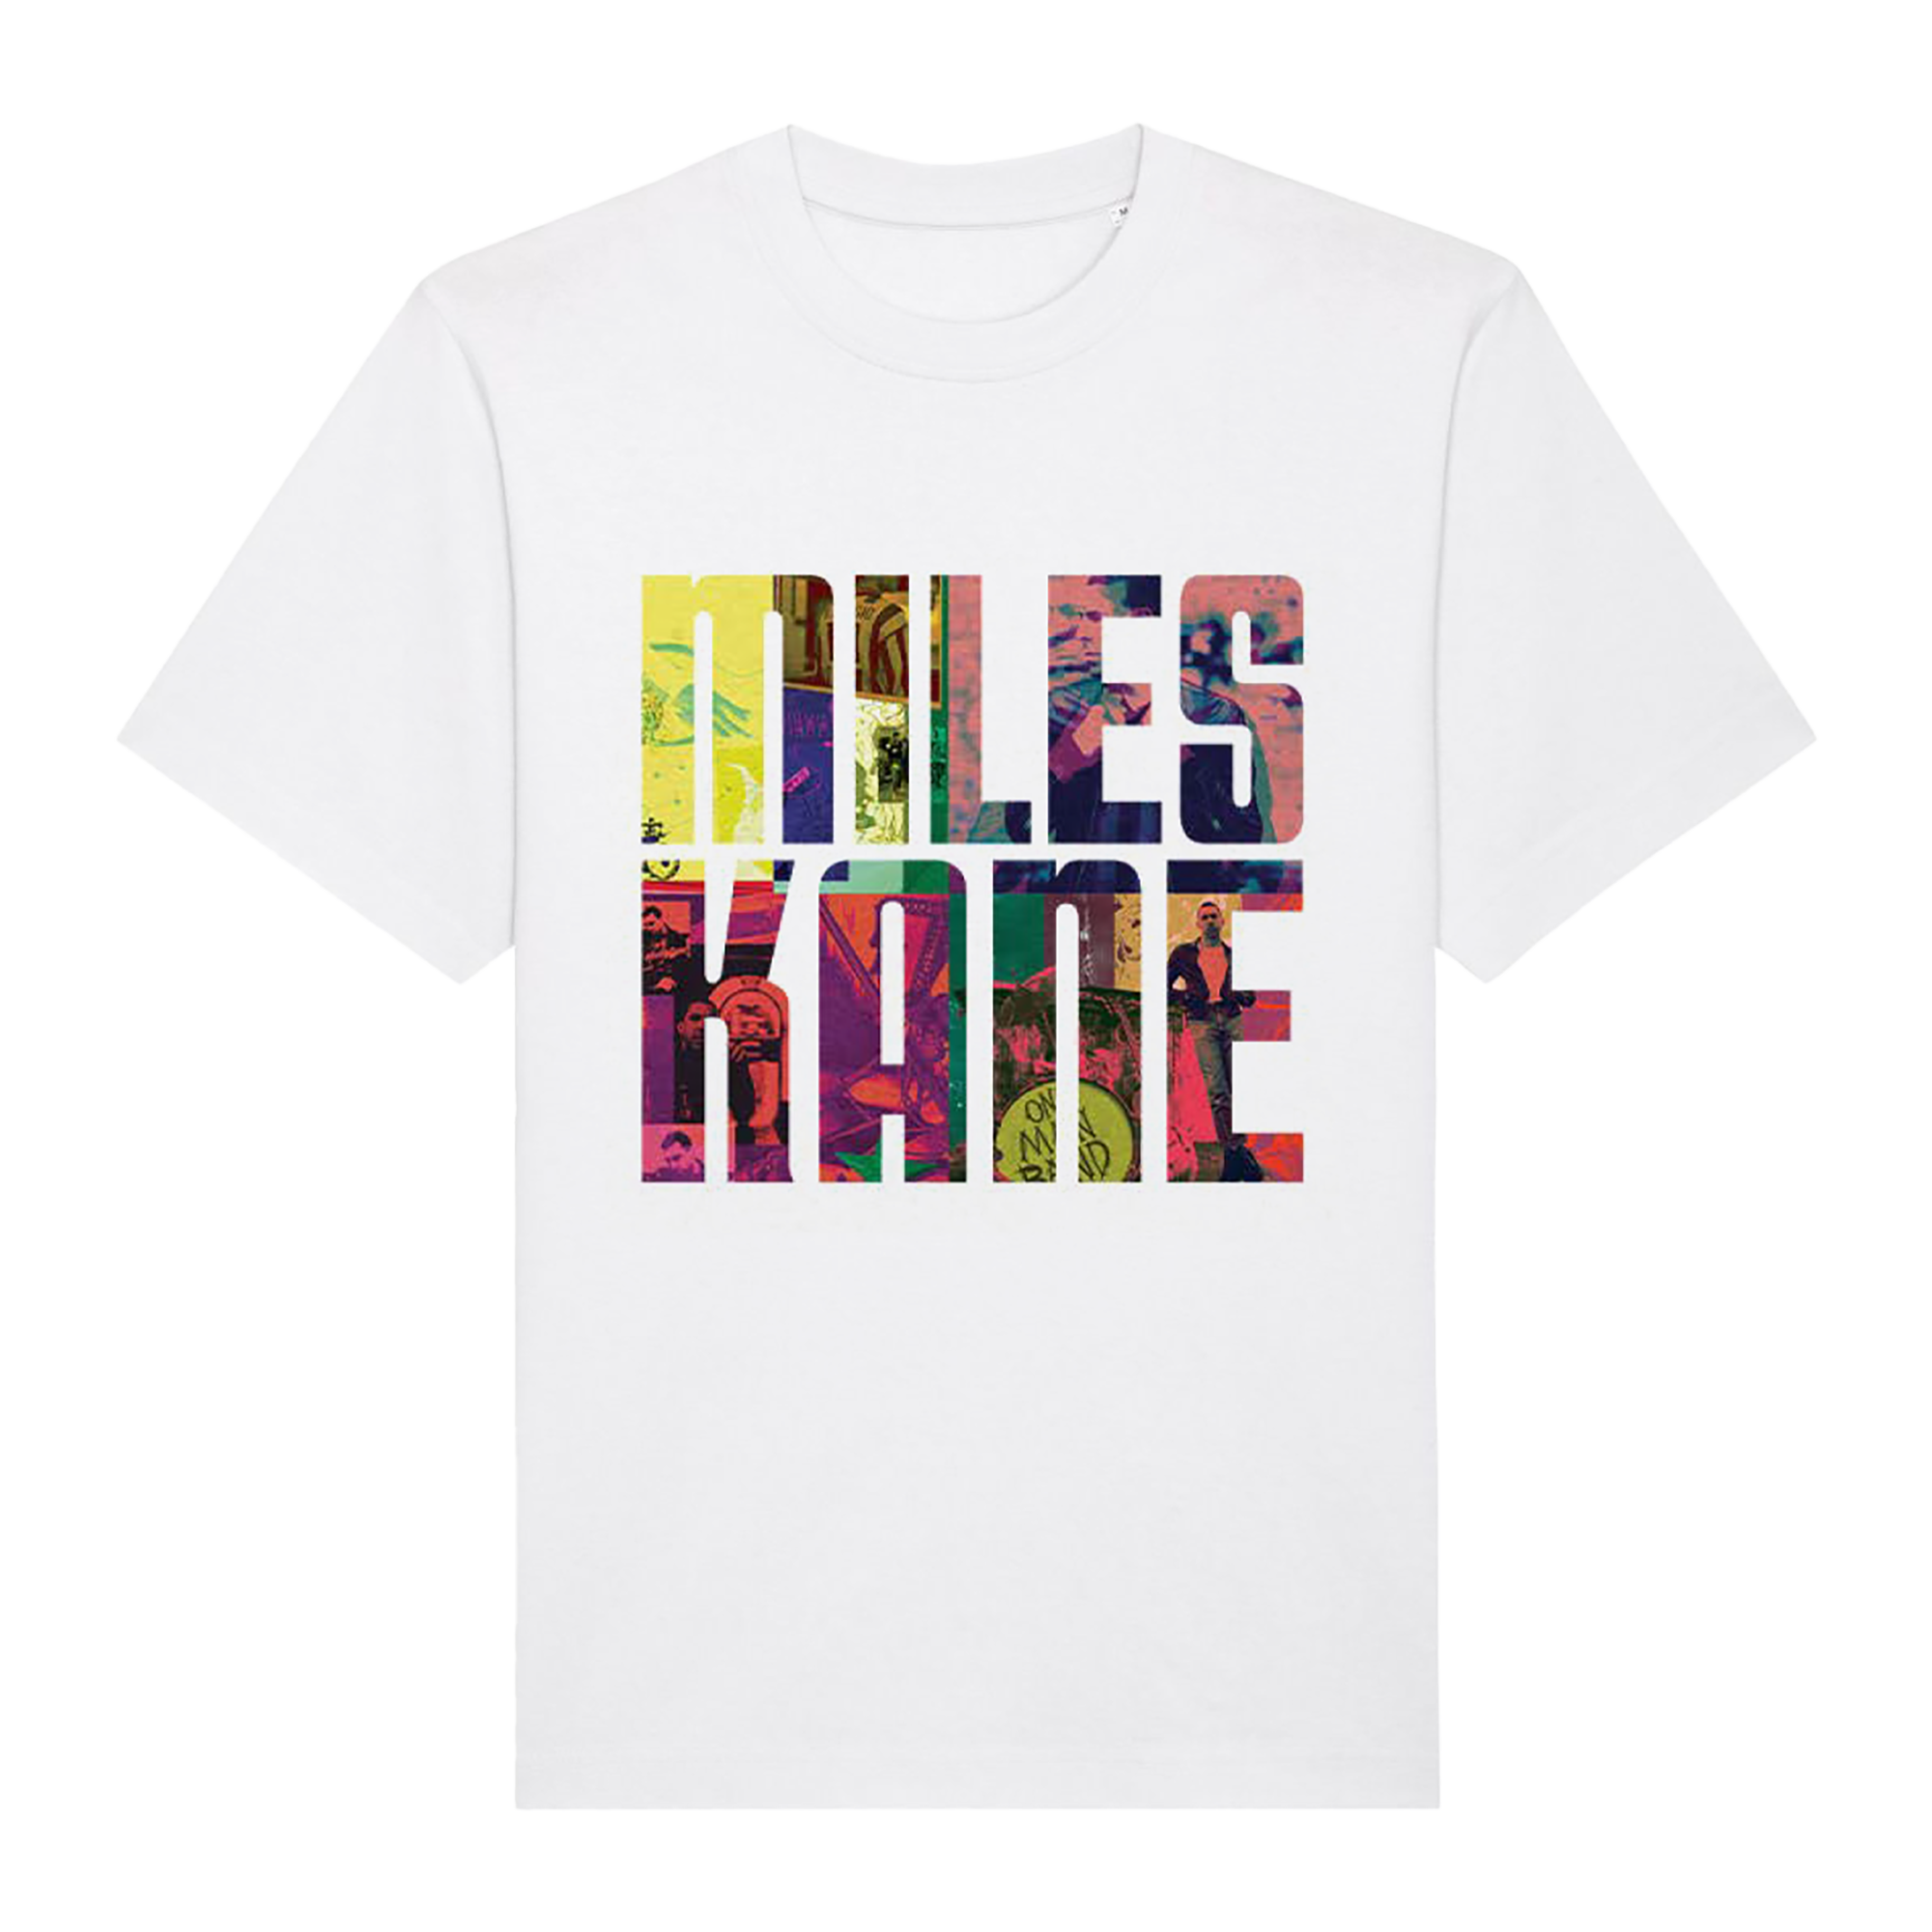 Miles Kane - White Infill Text Tee